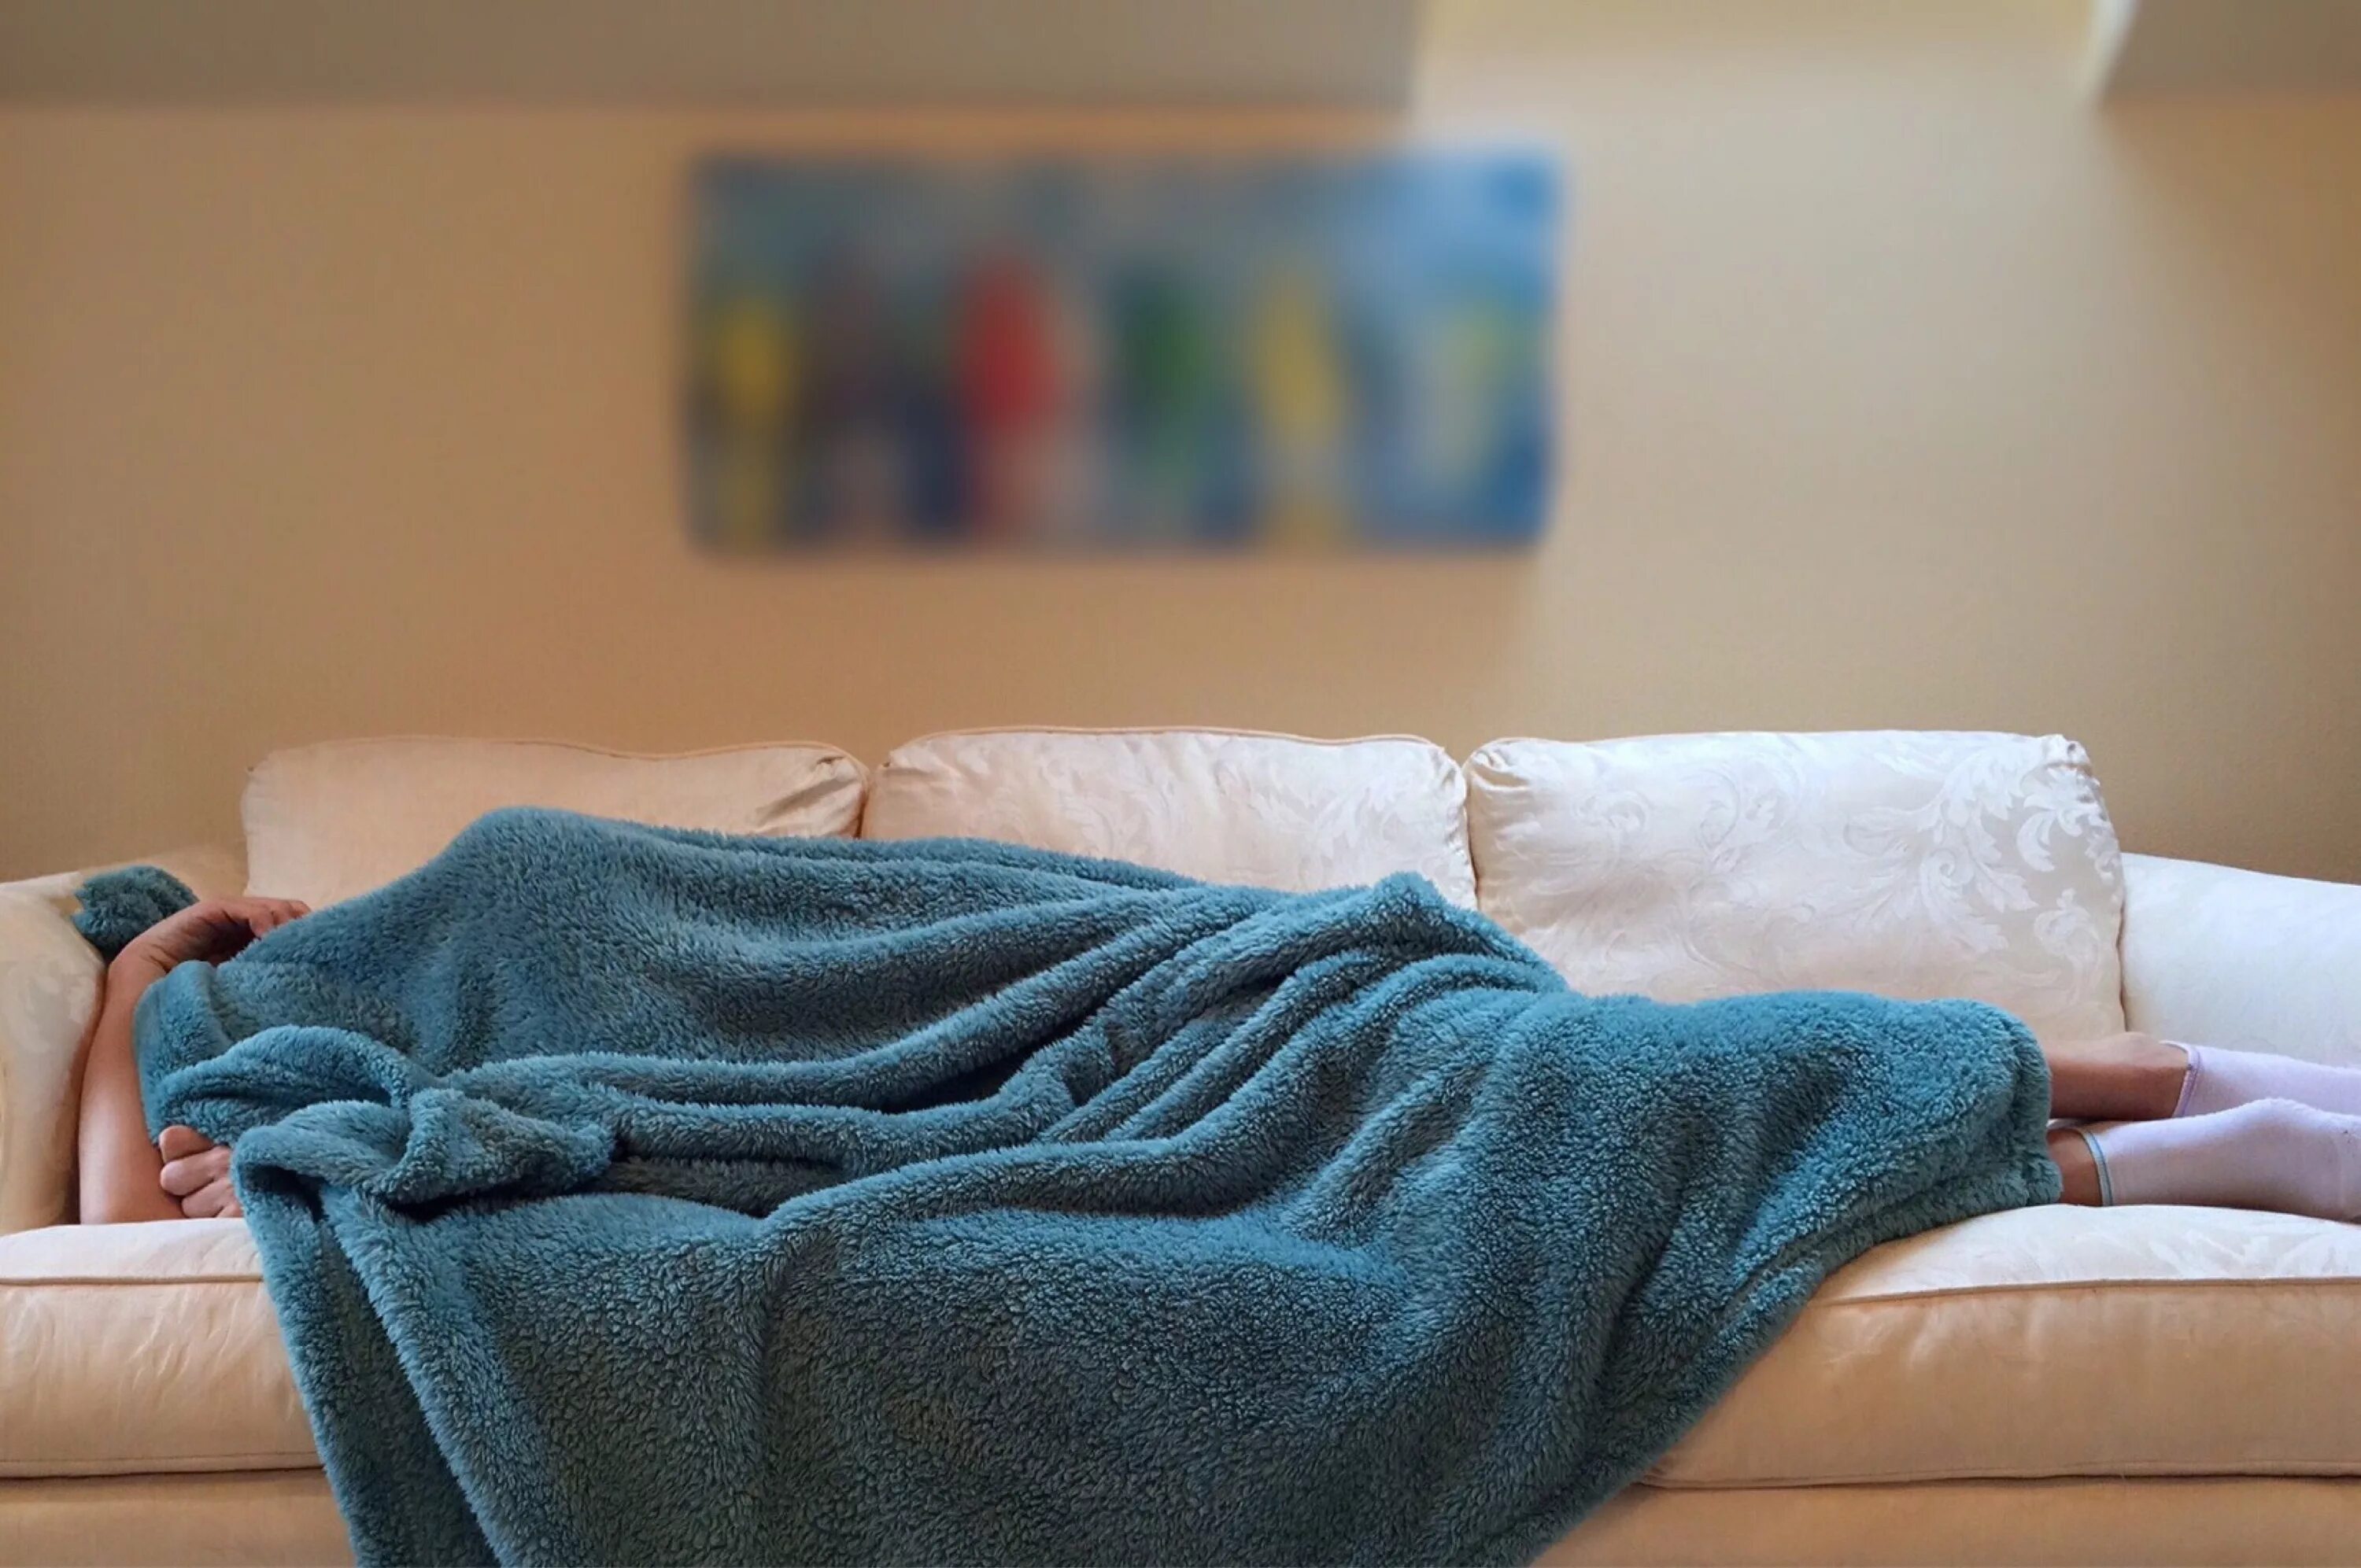 Отдыхать в постели. Человек под одеялом. Человек в пледе. Спящий человек под одеялом. Человек укутанный в плед.